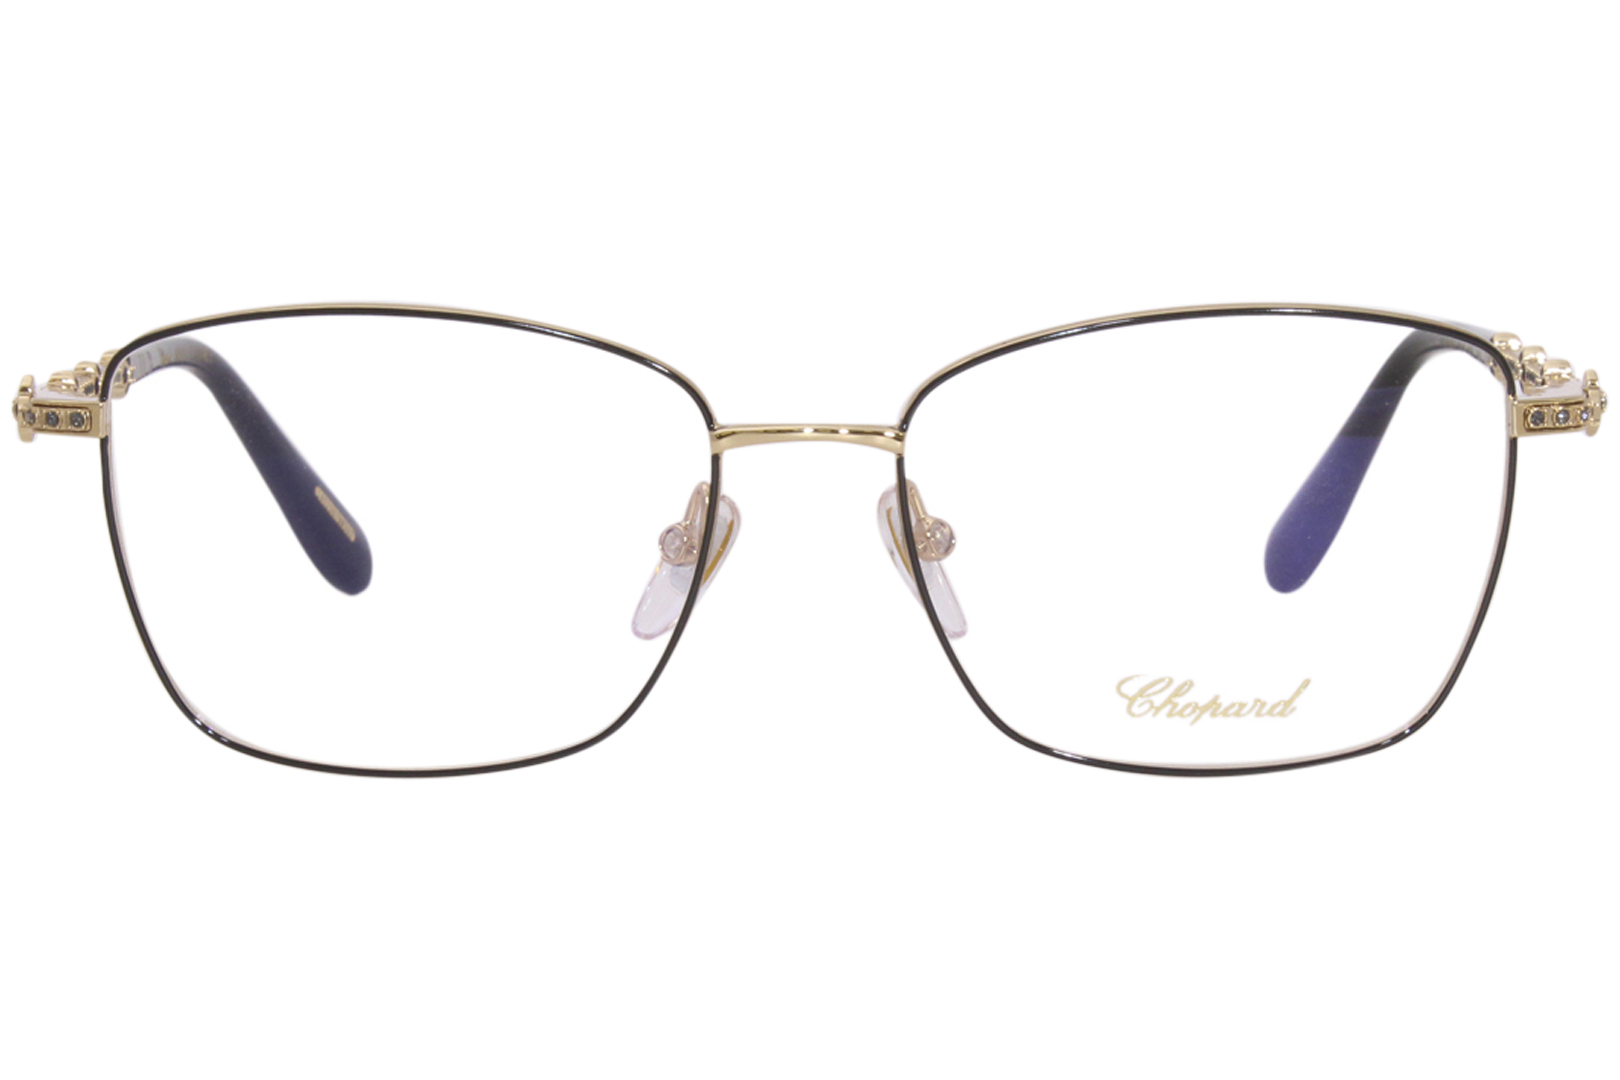 Chopard VCHG65S 0301 Eyeglasses Women's Rose Gold/Black Full Rim 55-16 ...